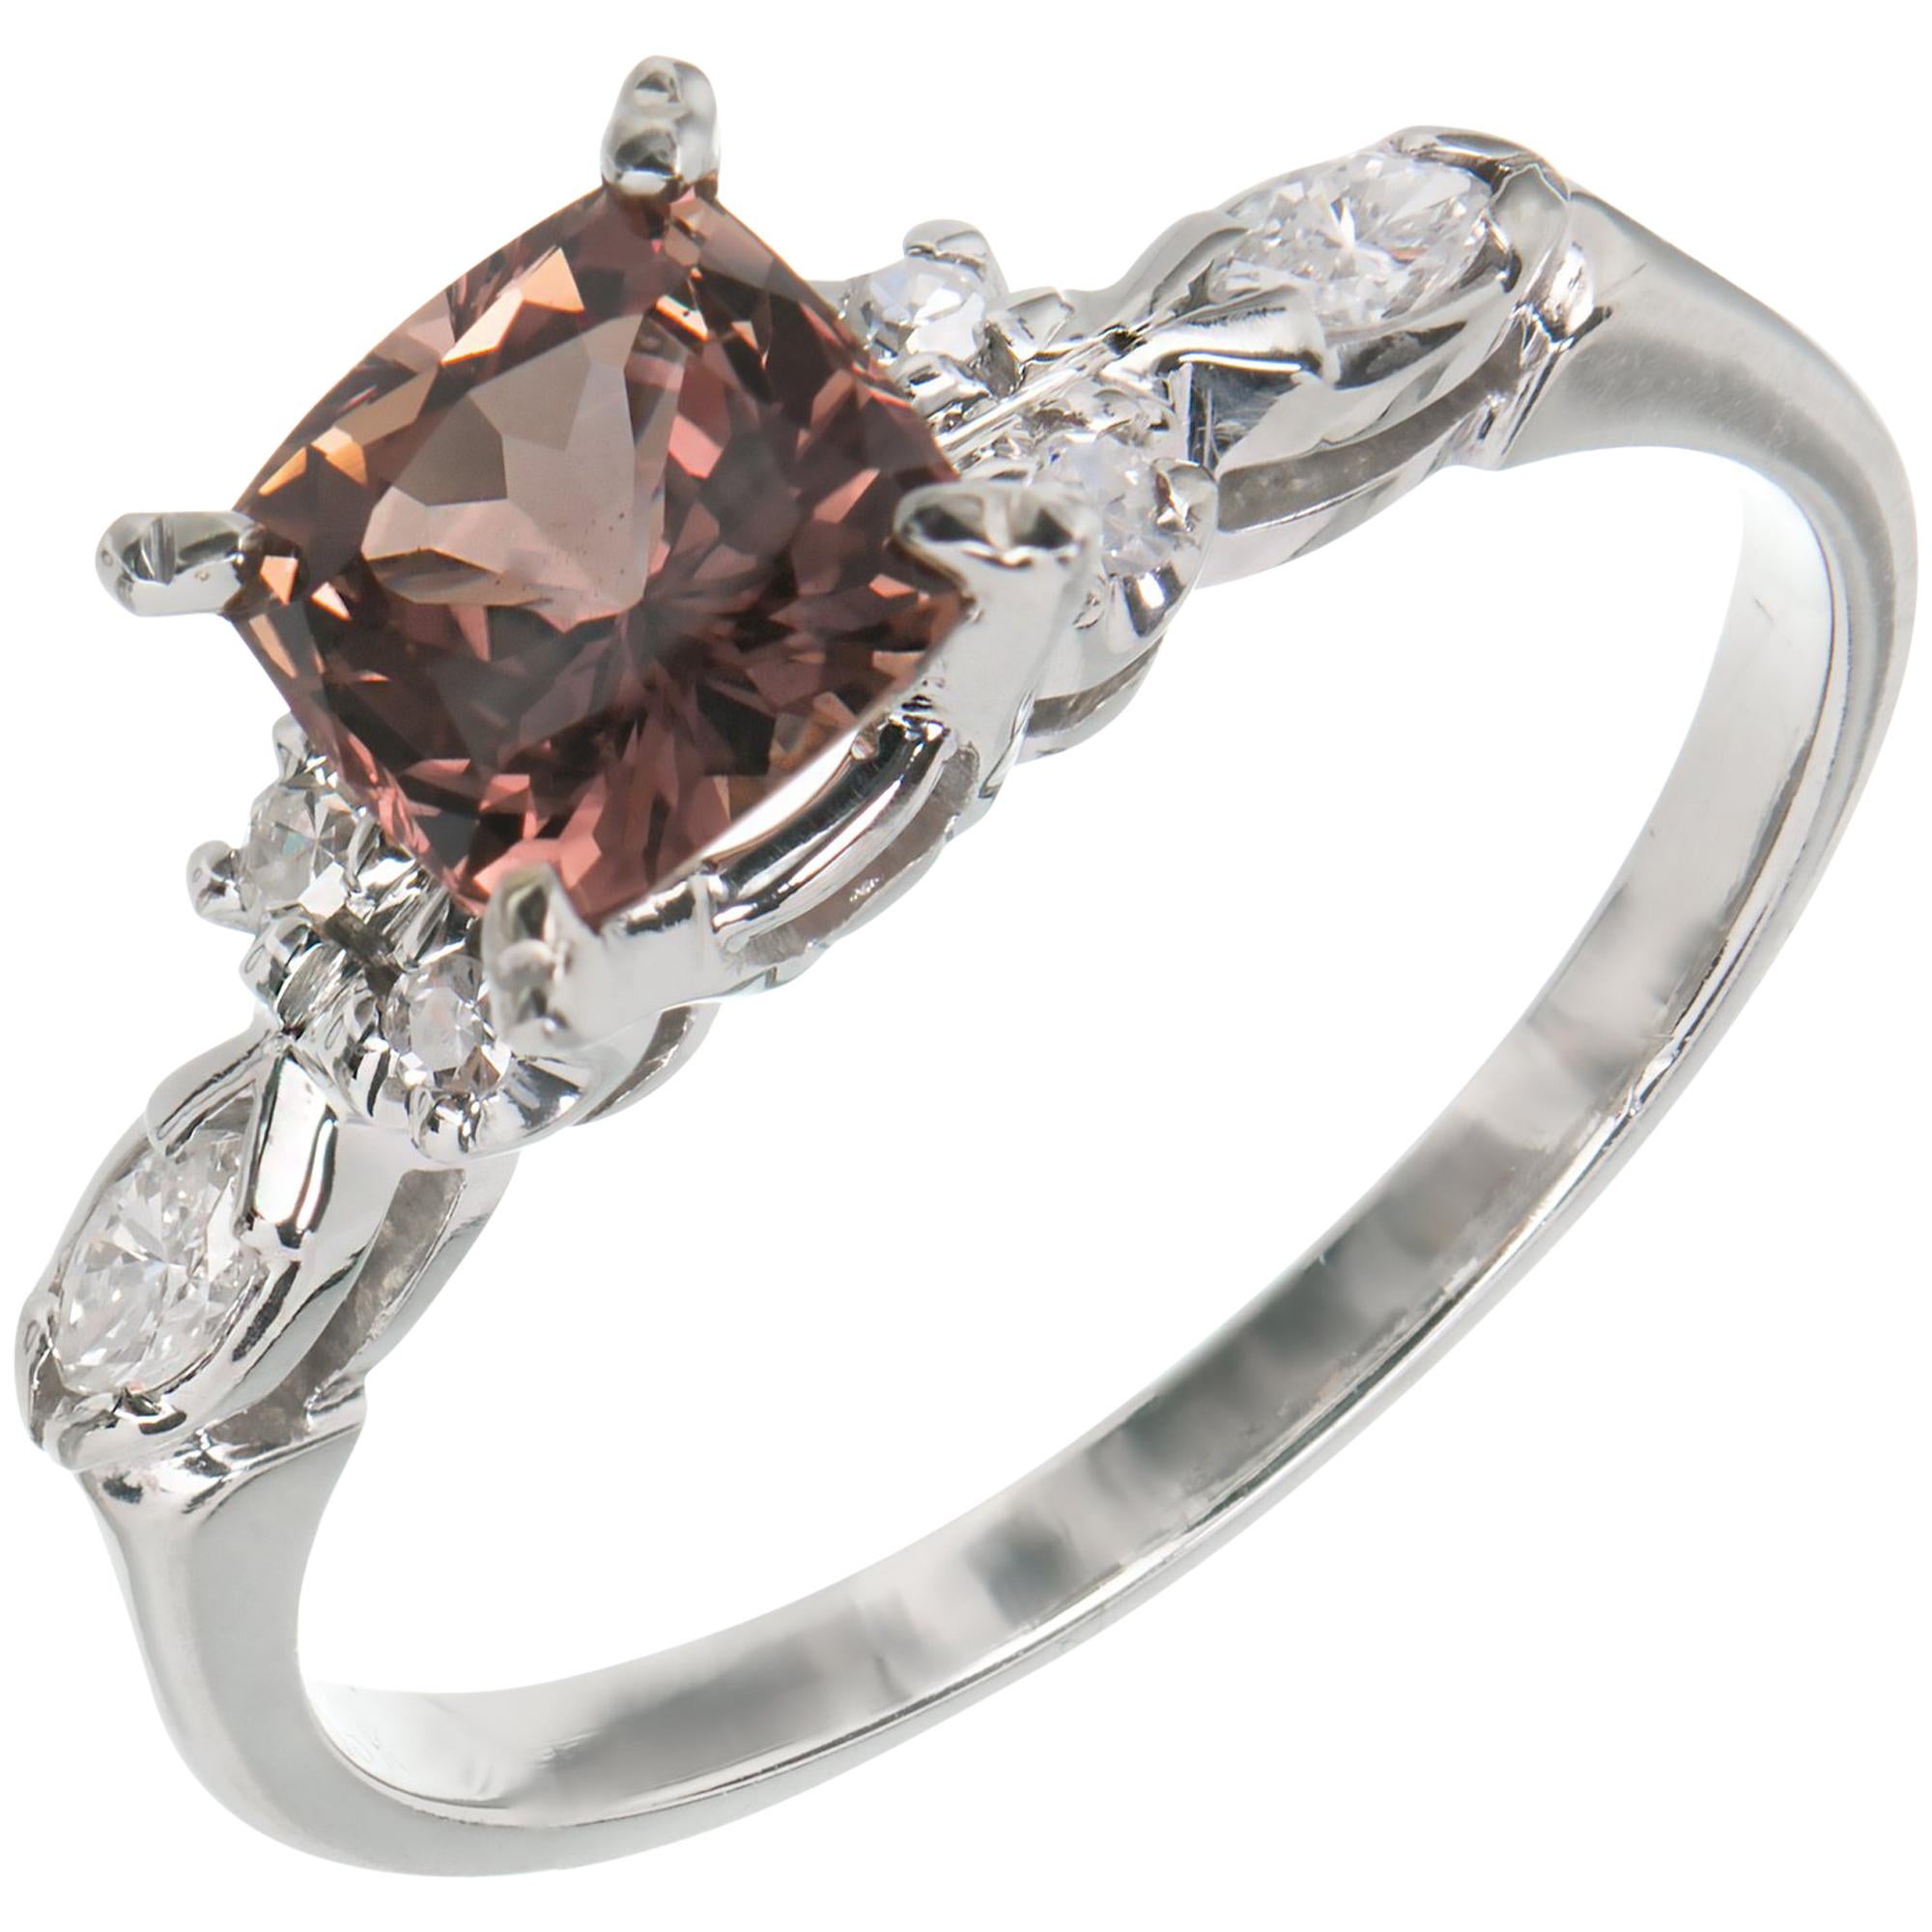 Bague de fiançailles en or avec diamants et saphir rose brun certifié GIA de 1,30 carat